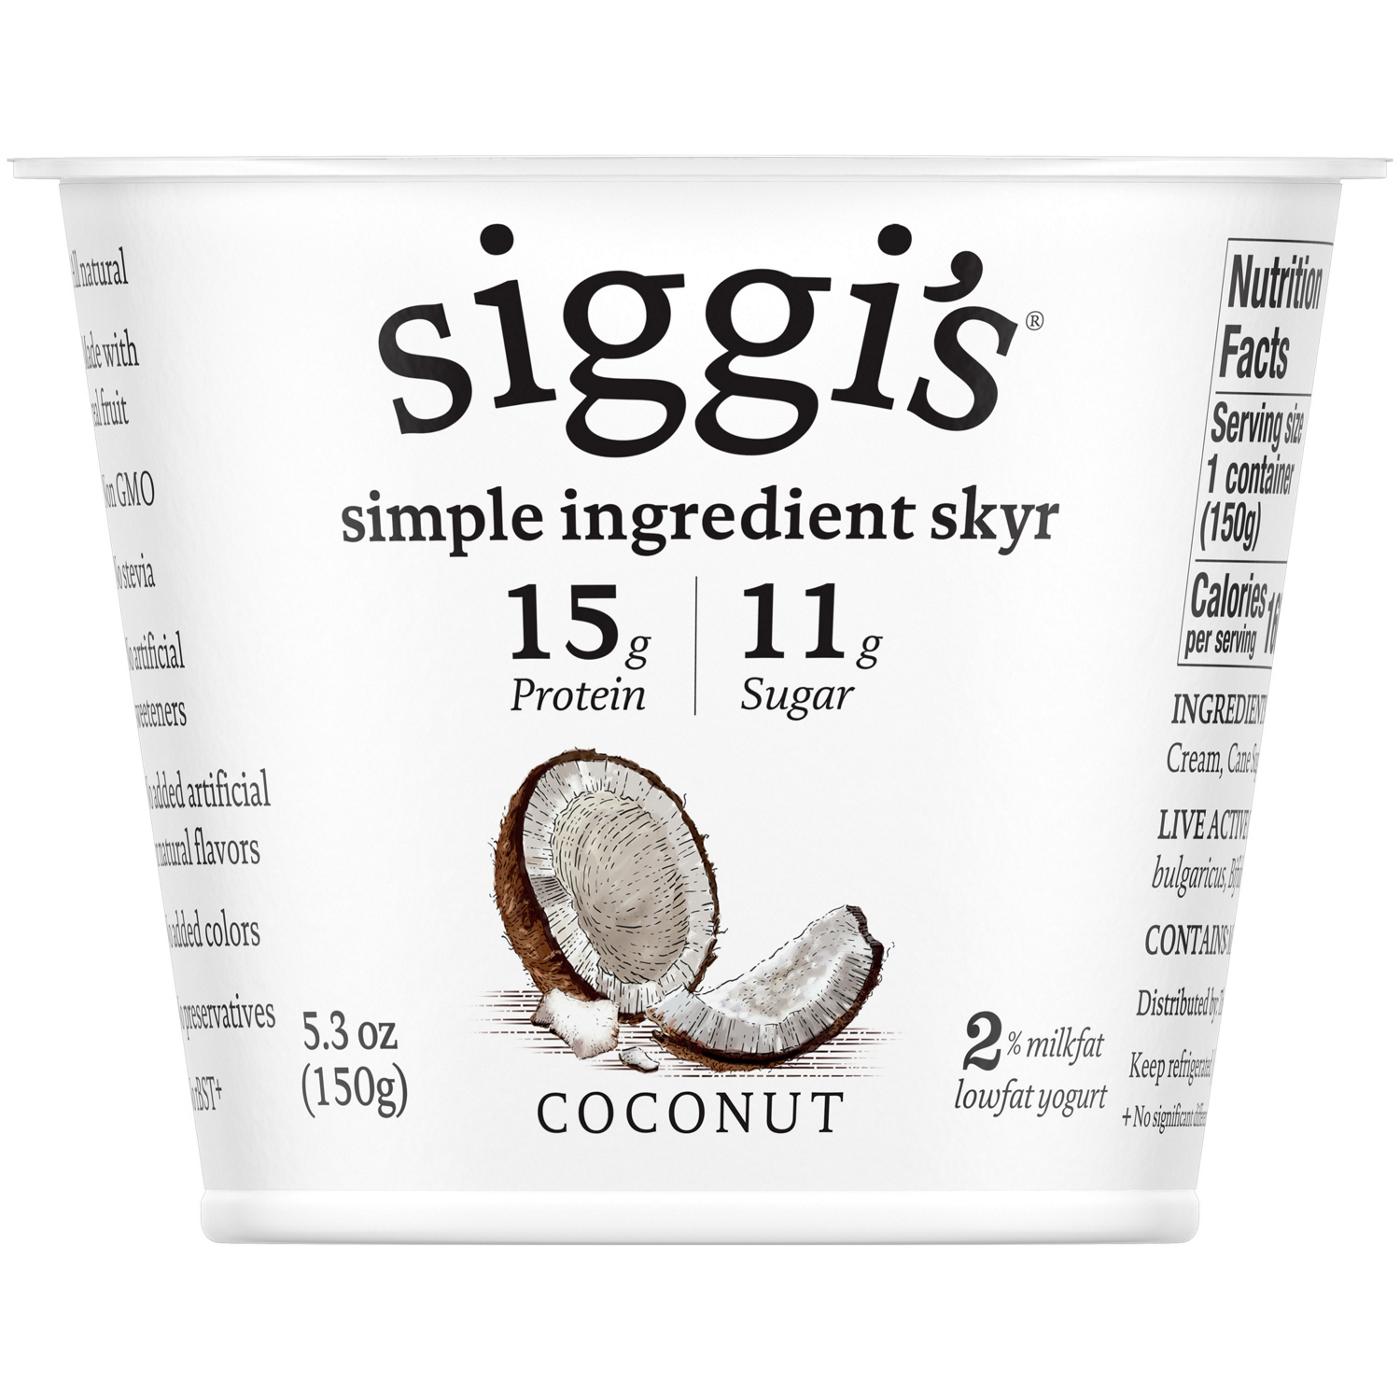 Siggi's 2% Non-Fat Strained Skyr Coconut Yogurt; image 1 of 2